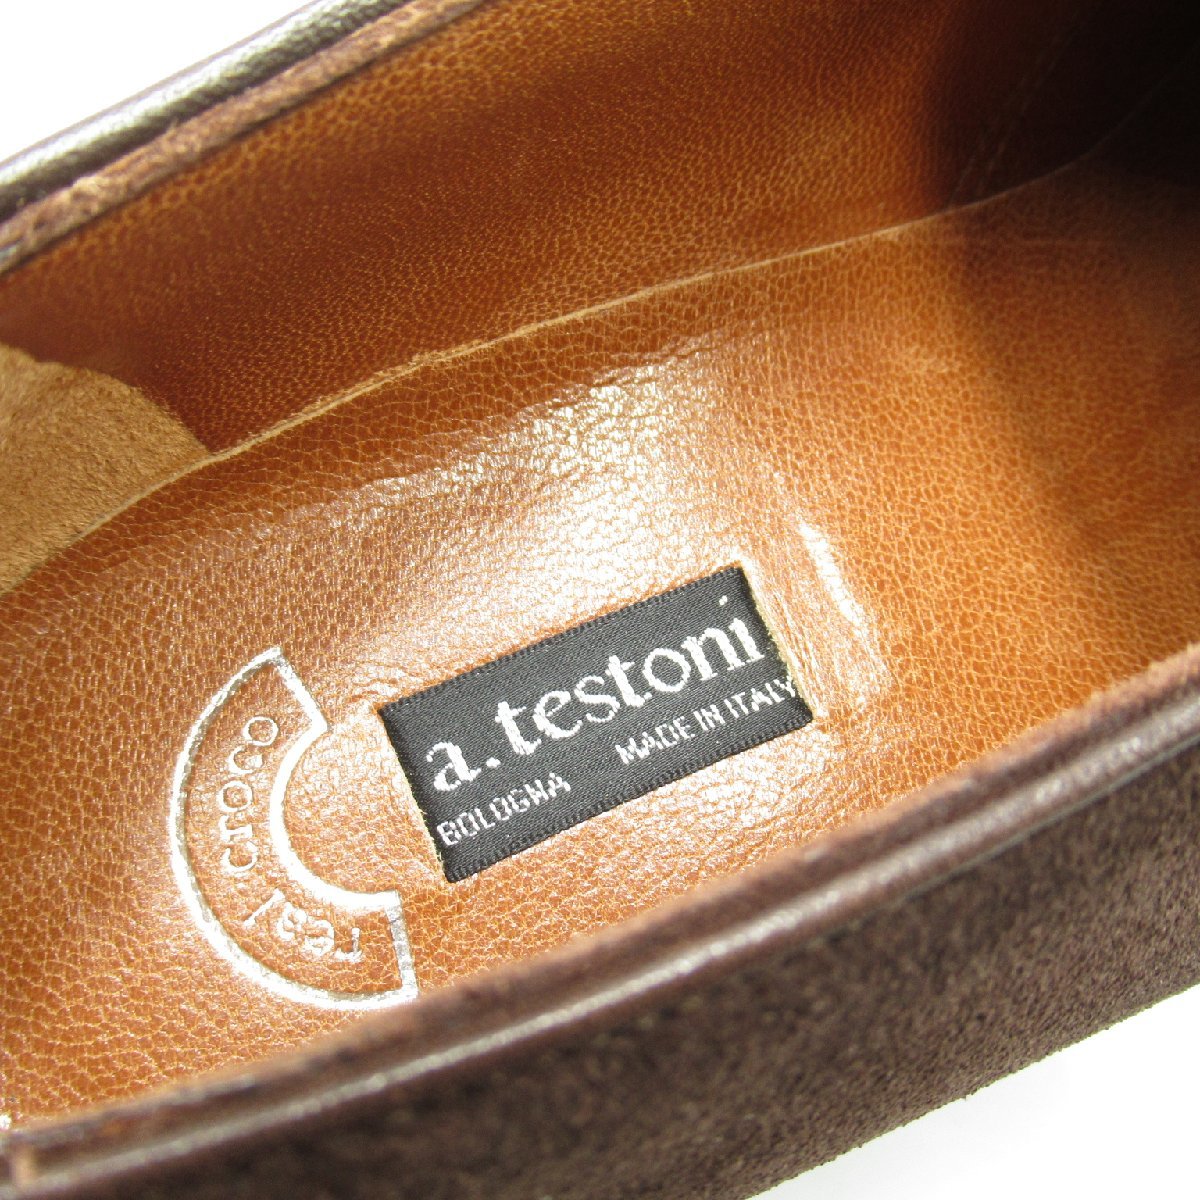 こ SELECTION セレクション その他靴 ダブルモンク ブラウン系 スウェード 中古 レディース 激安ベストセラー商品 